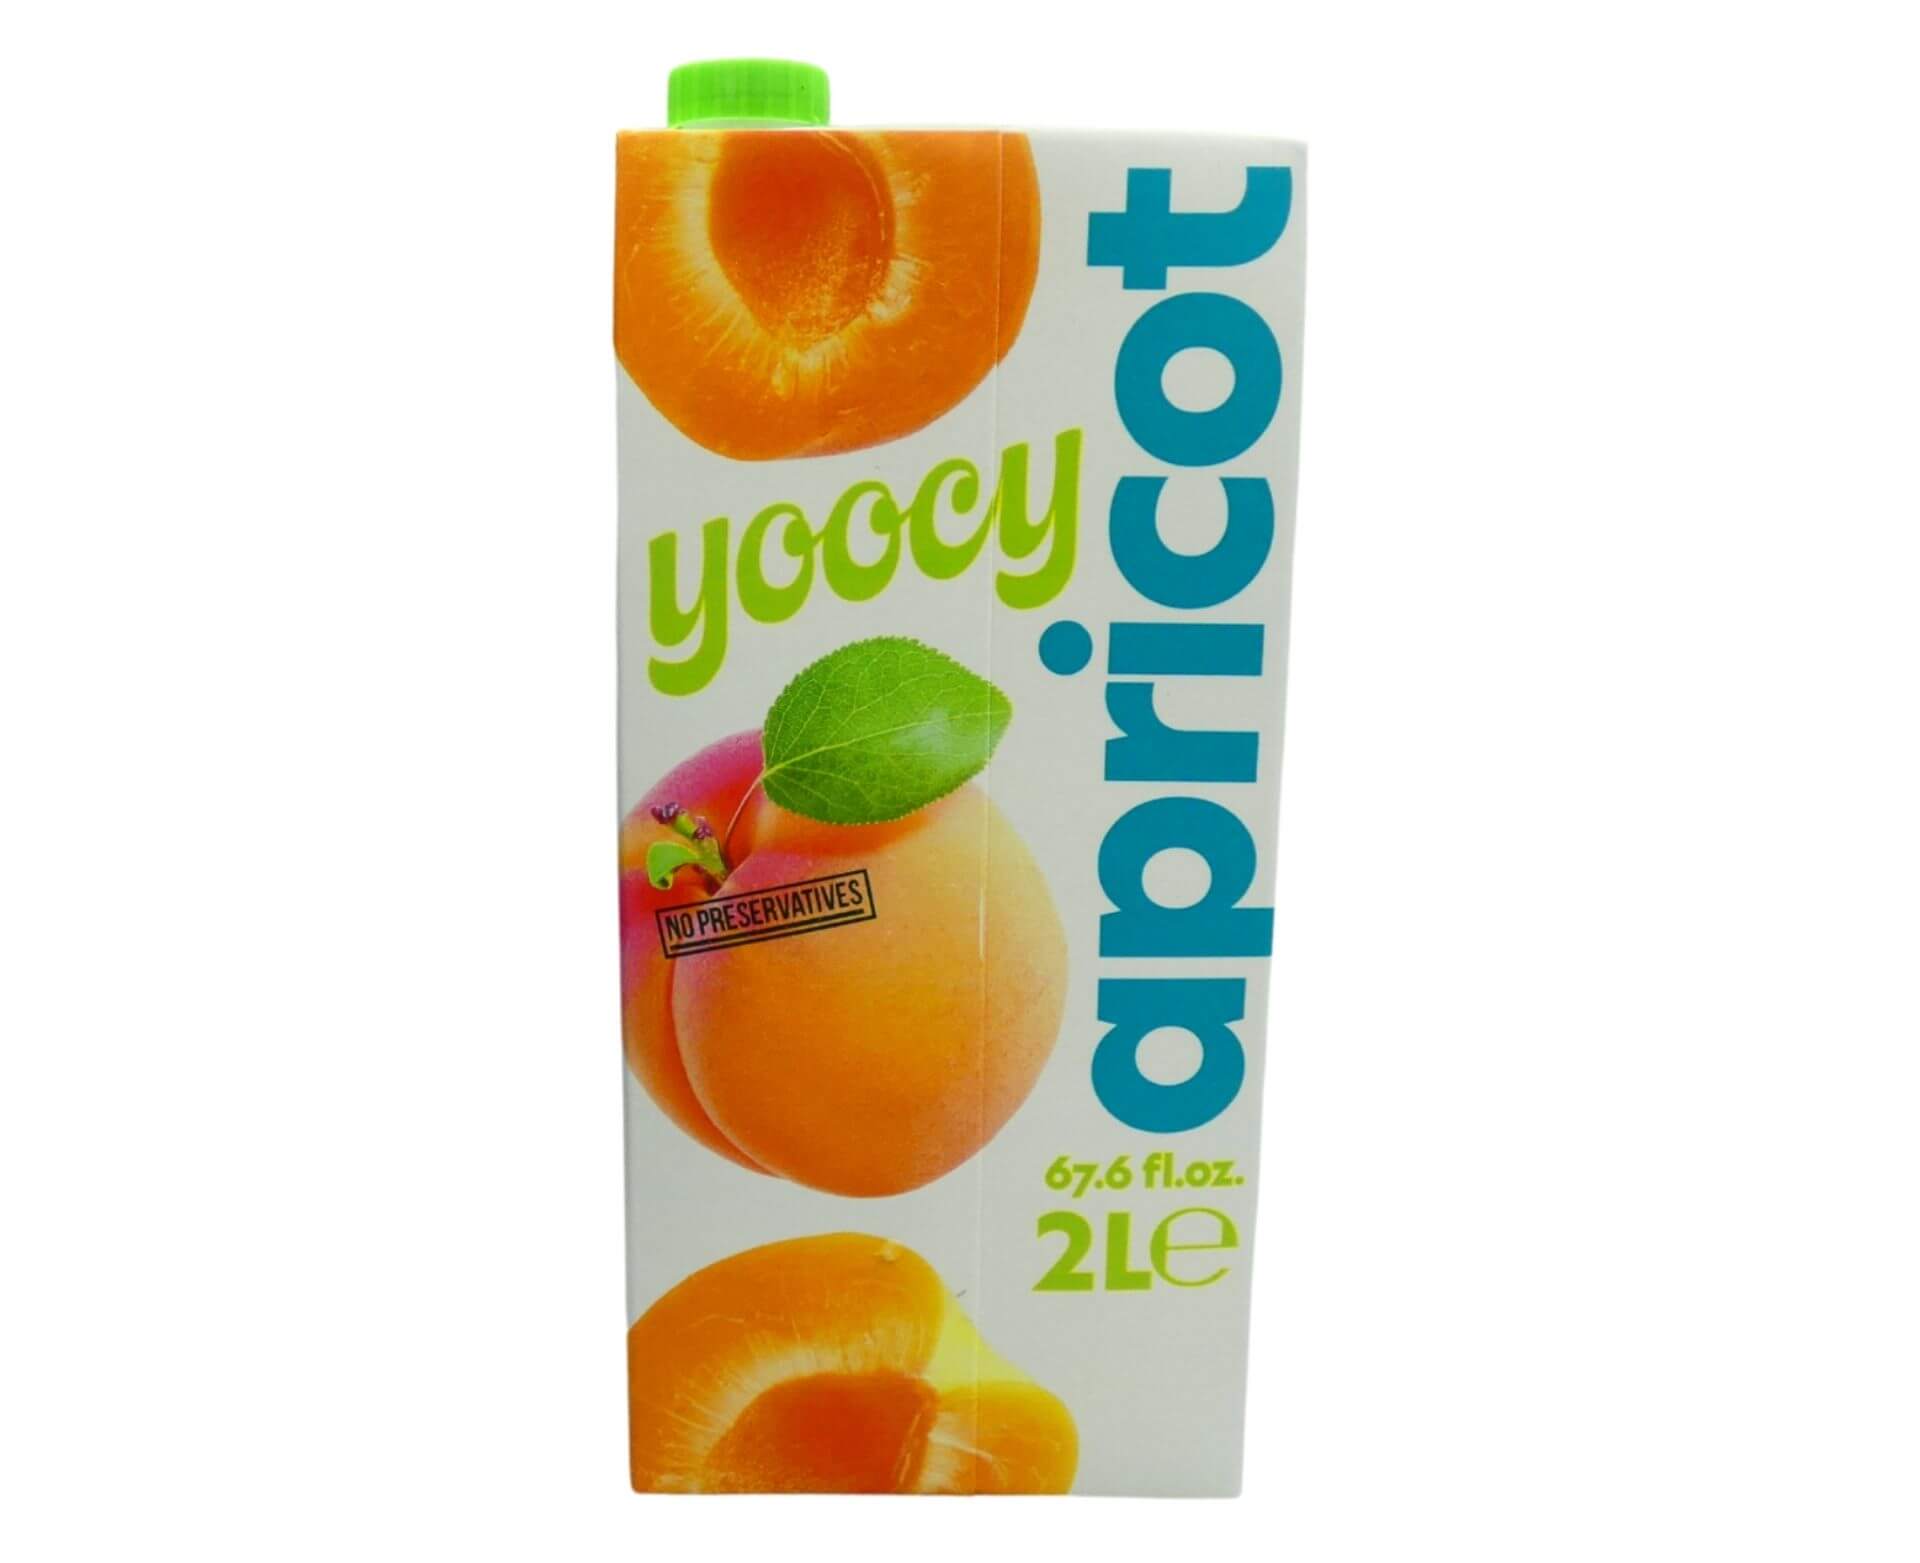 Yoocy Apricot Fruit Drink (2 lt) - Aytac Foods